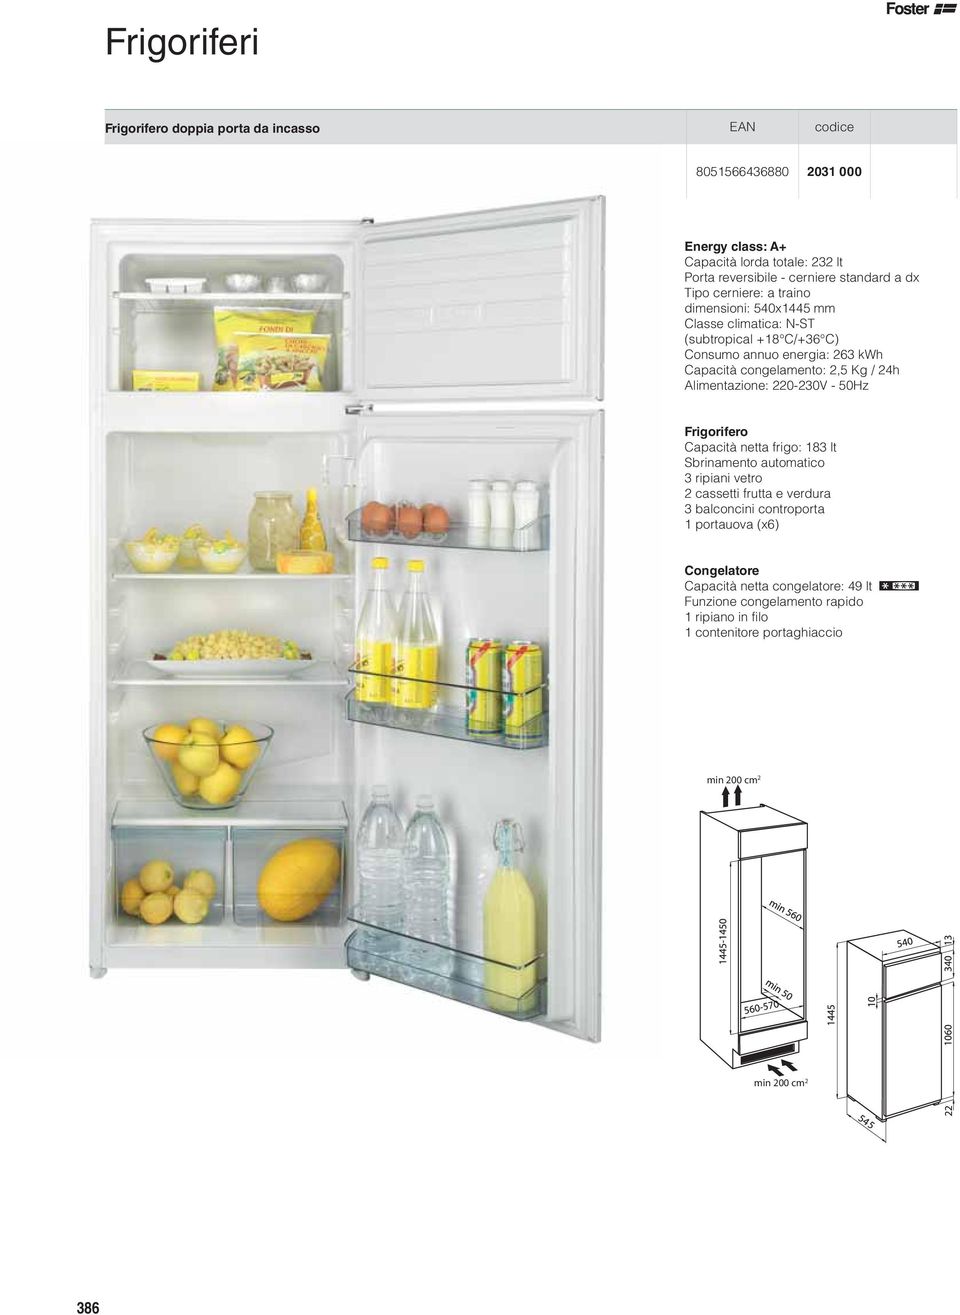 24h Alimentazione: 220-230V - 50Hz Frigorifero Capacità netta frigo: 183 lt Sbrinamento automatico 3 ripiani vetro 2 cassetti frutta e verdura 3 balconcini